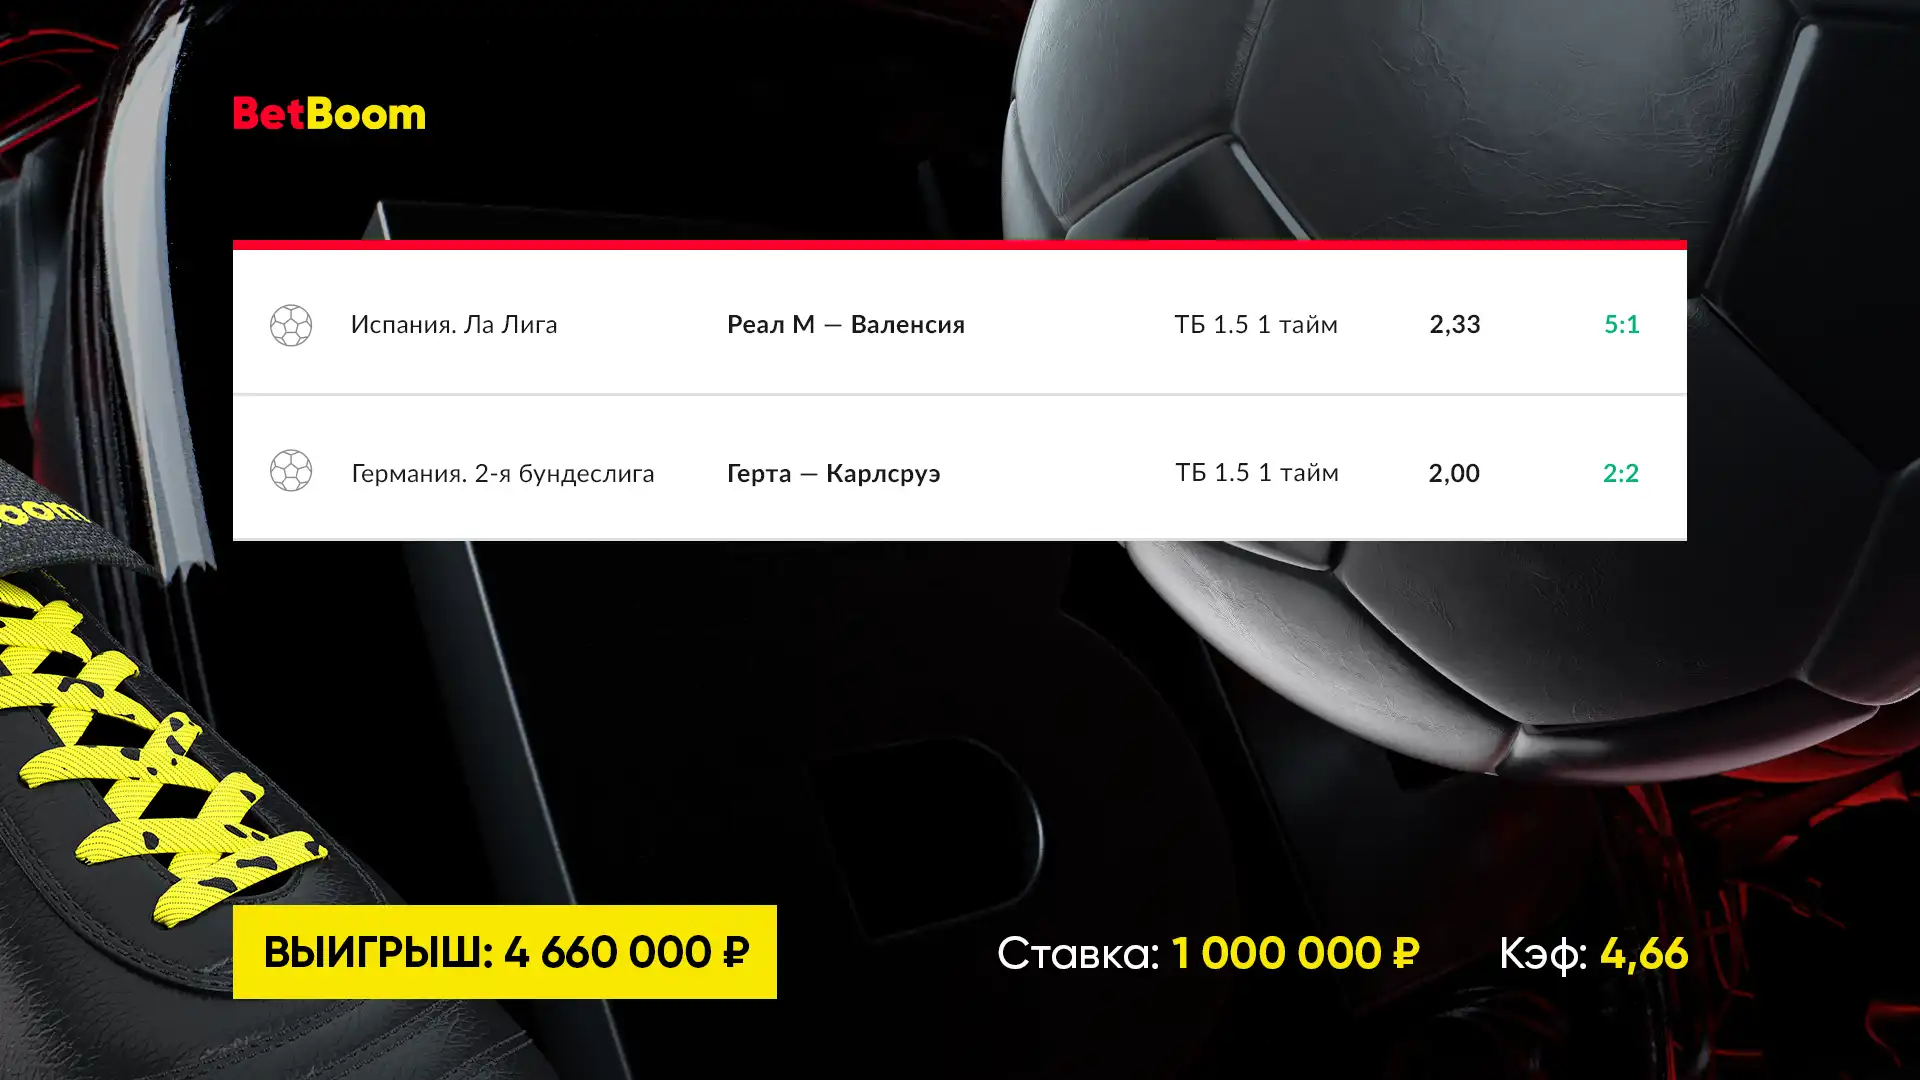 Три экспресса на границе успеха: клиент BetBoom с тремя купонами выиграл свыше 14 000 000 рублей